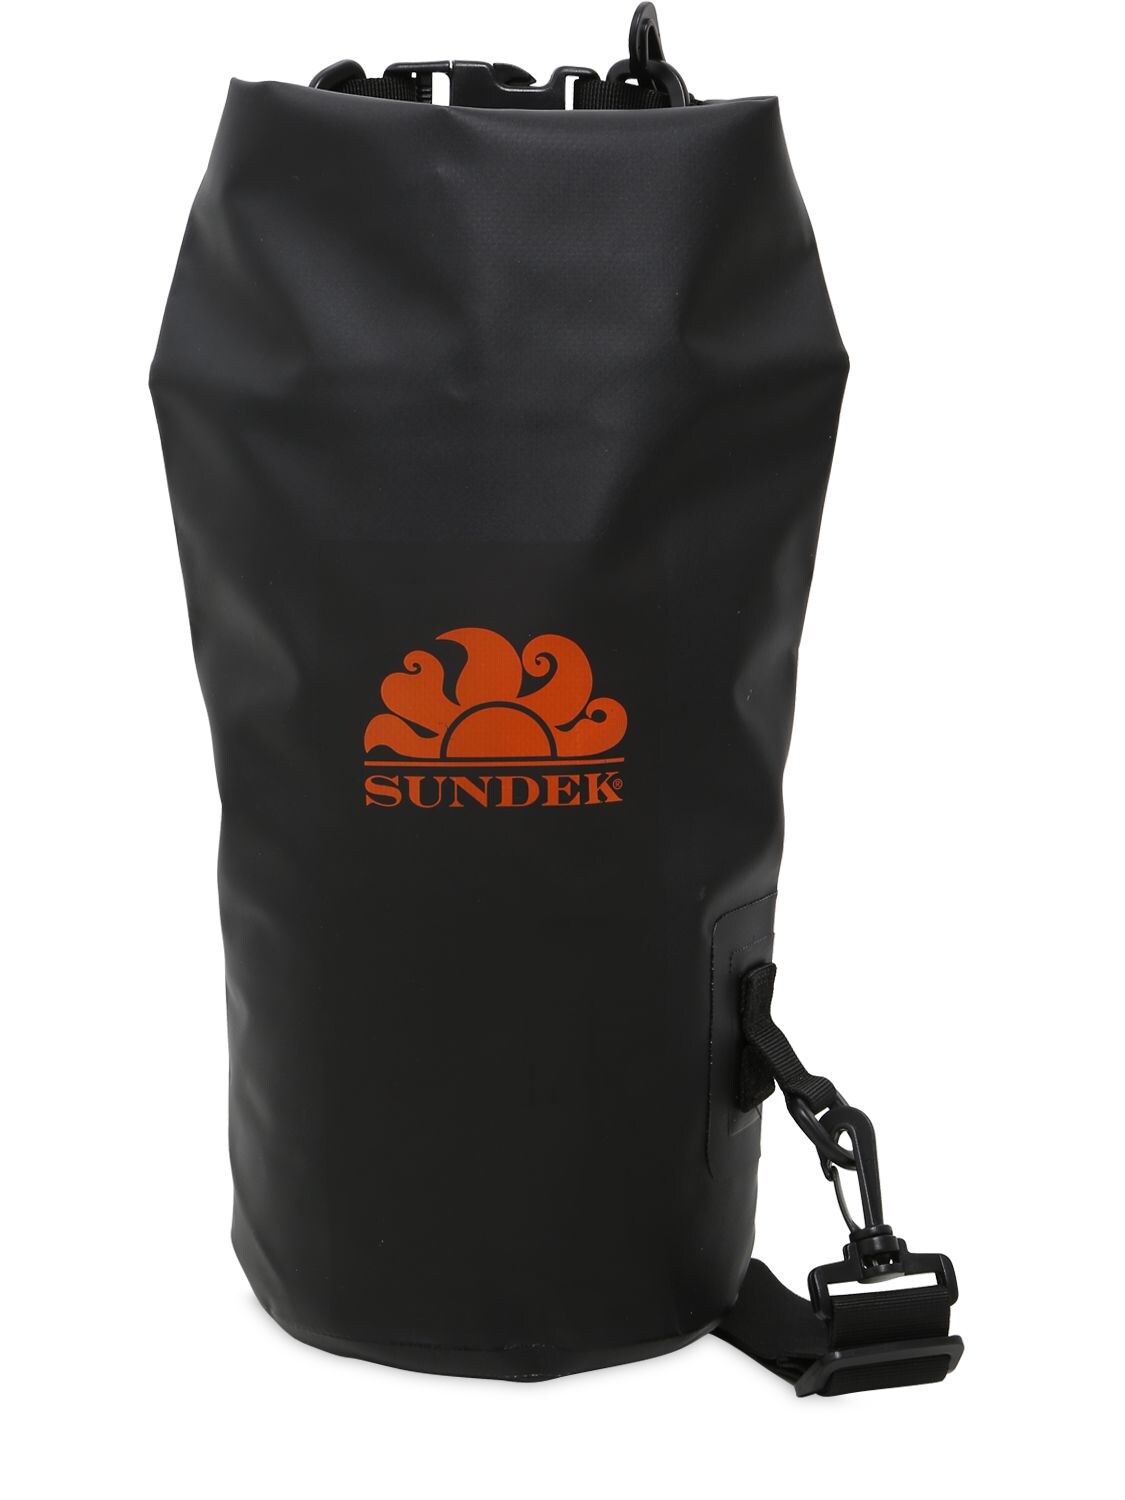 Sundek 5l Aladino Waterproof Bag In Black